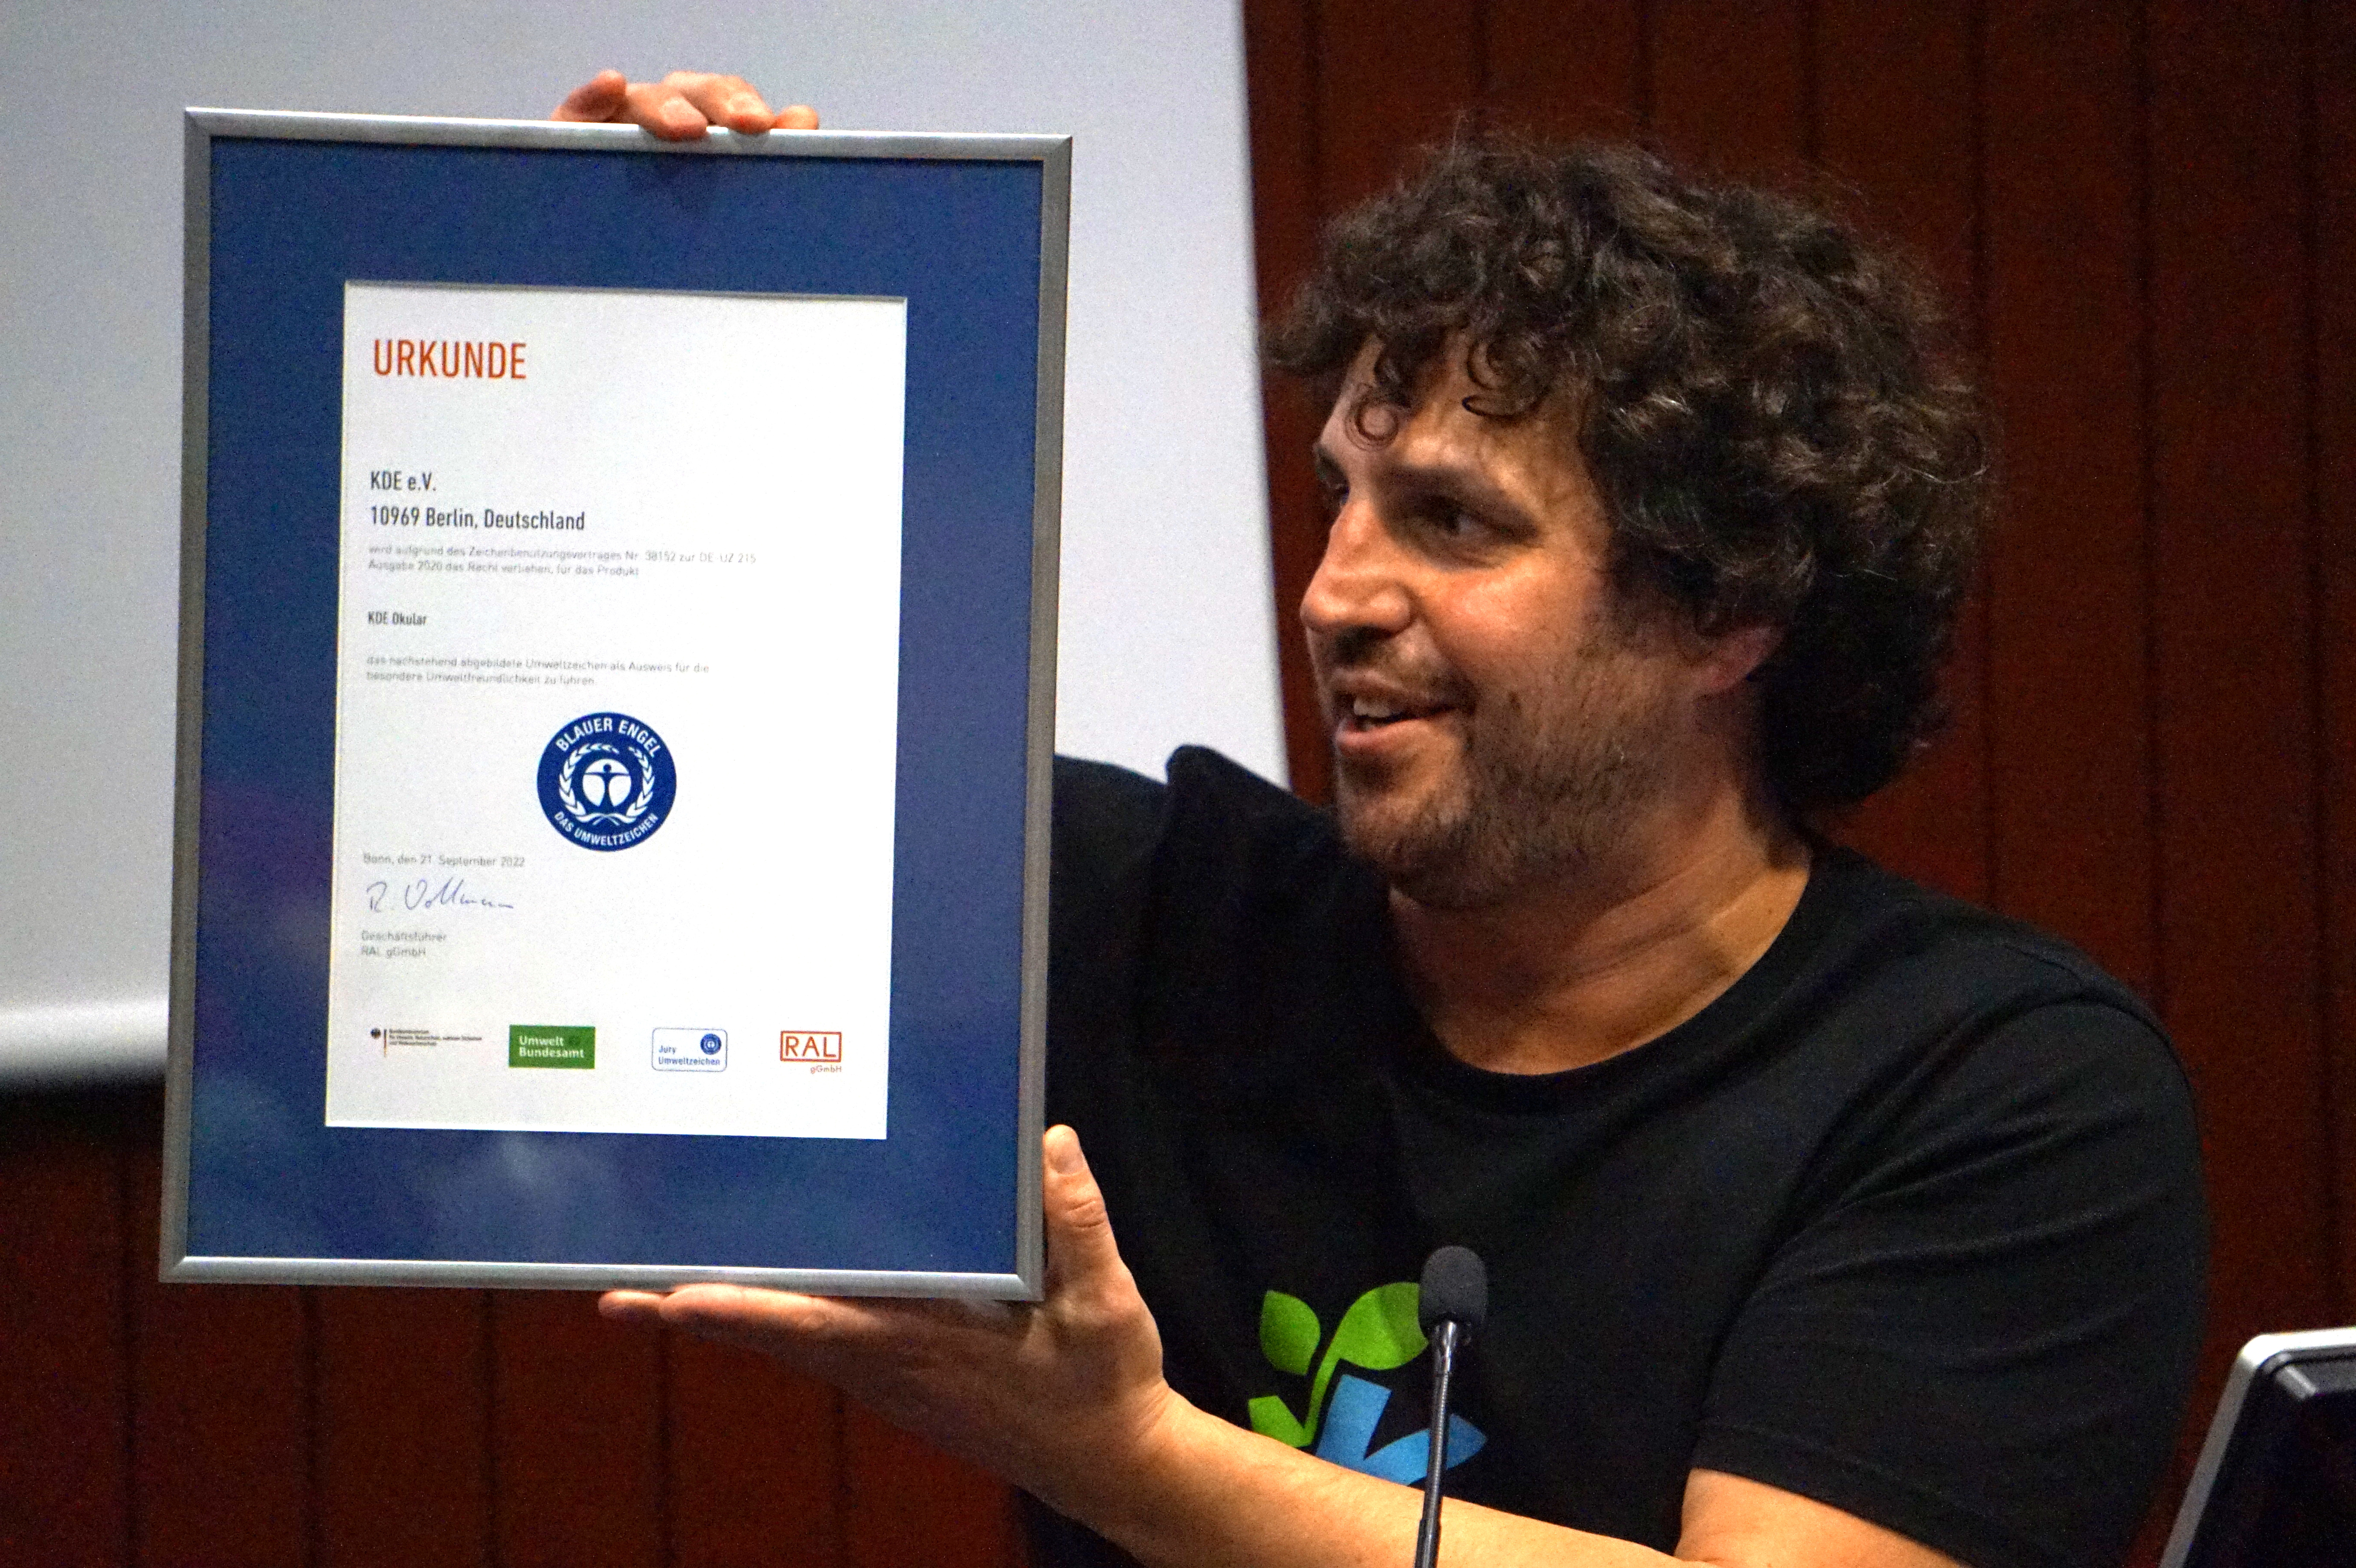 Joseph De Veaugh-Geiss shows the eco-certification awarded to KDE's Okular PDF-document reader.